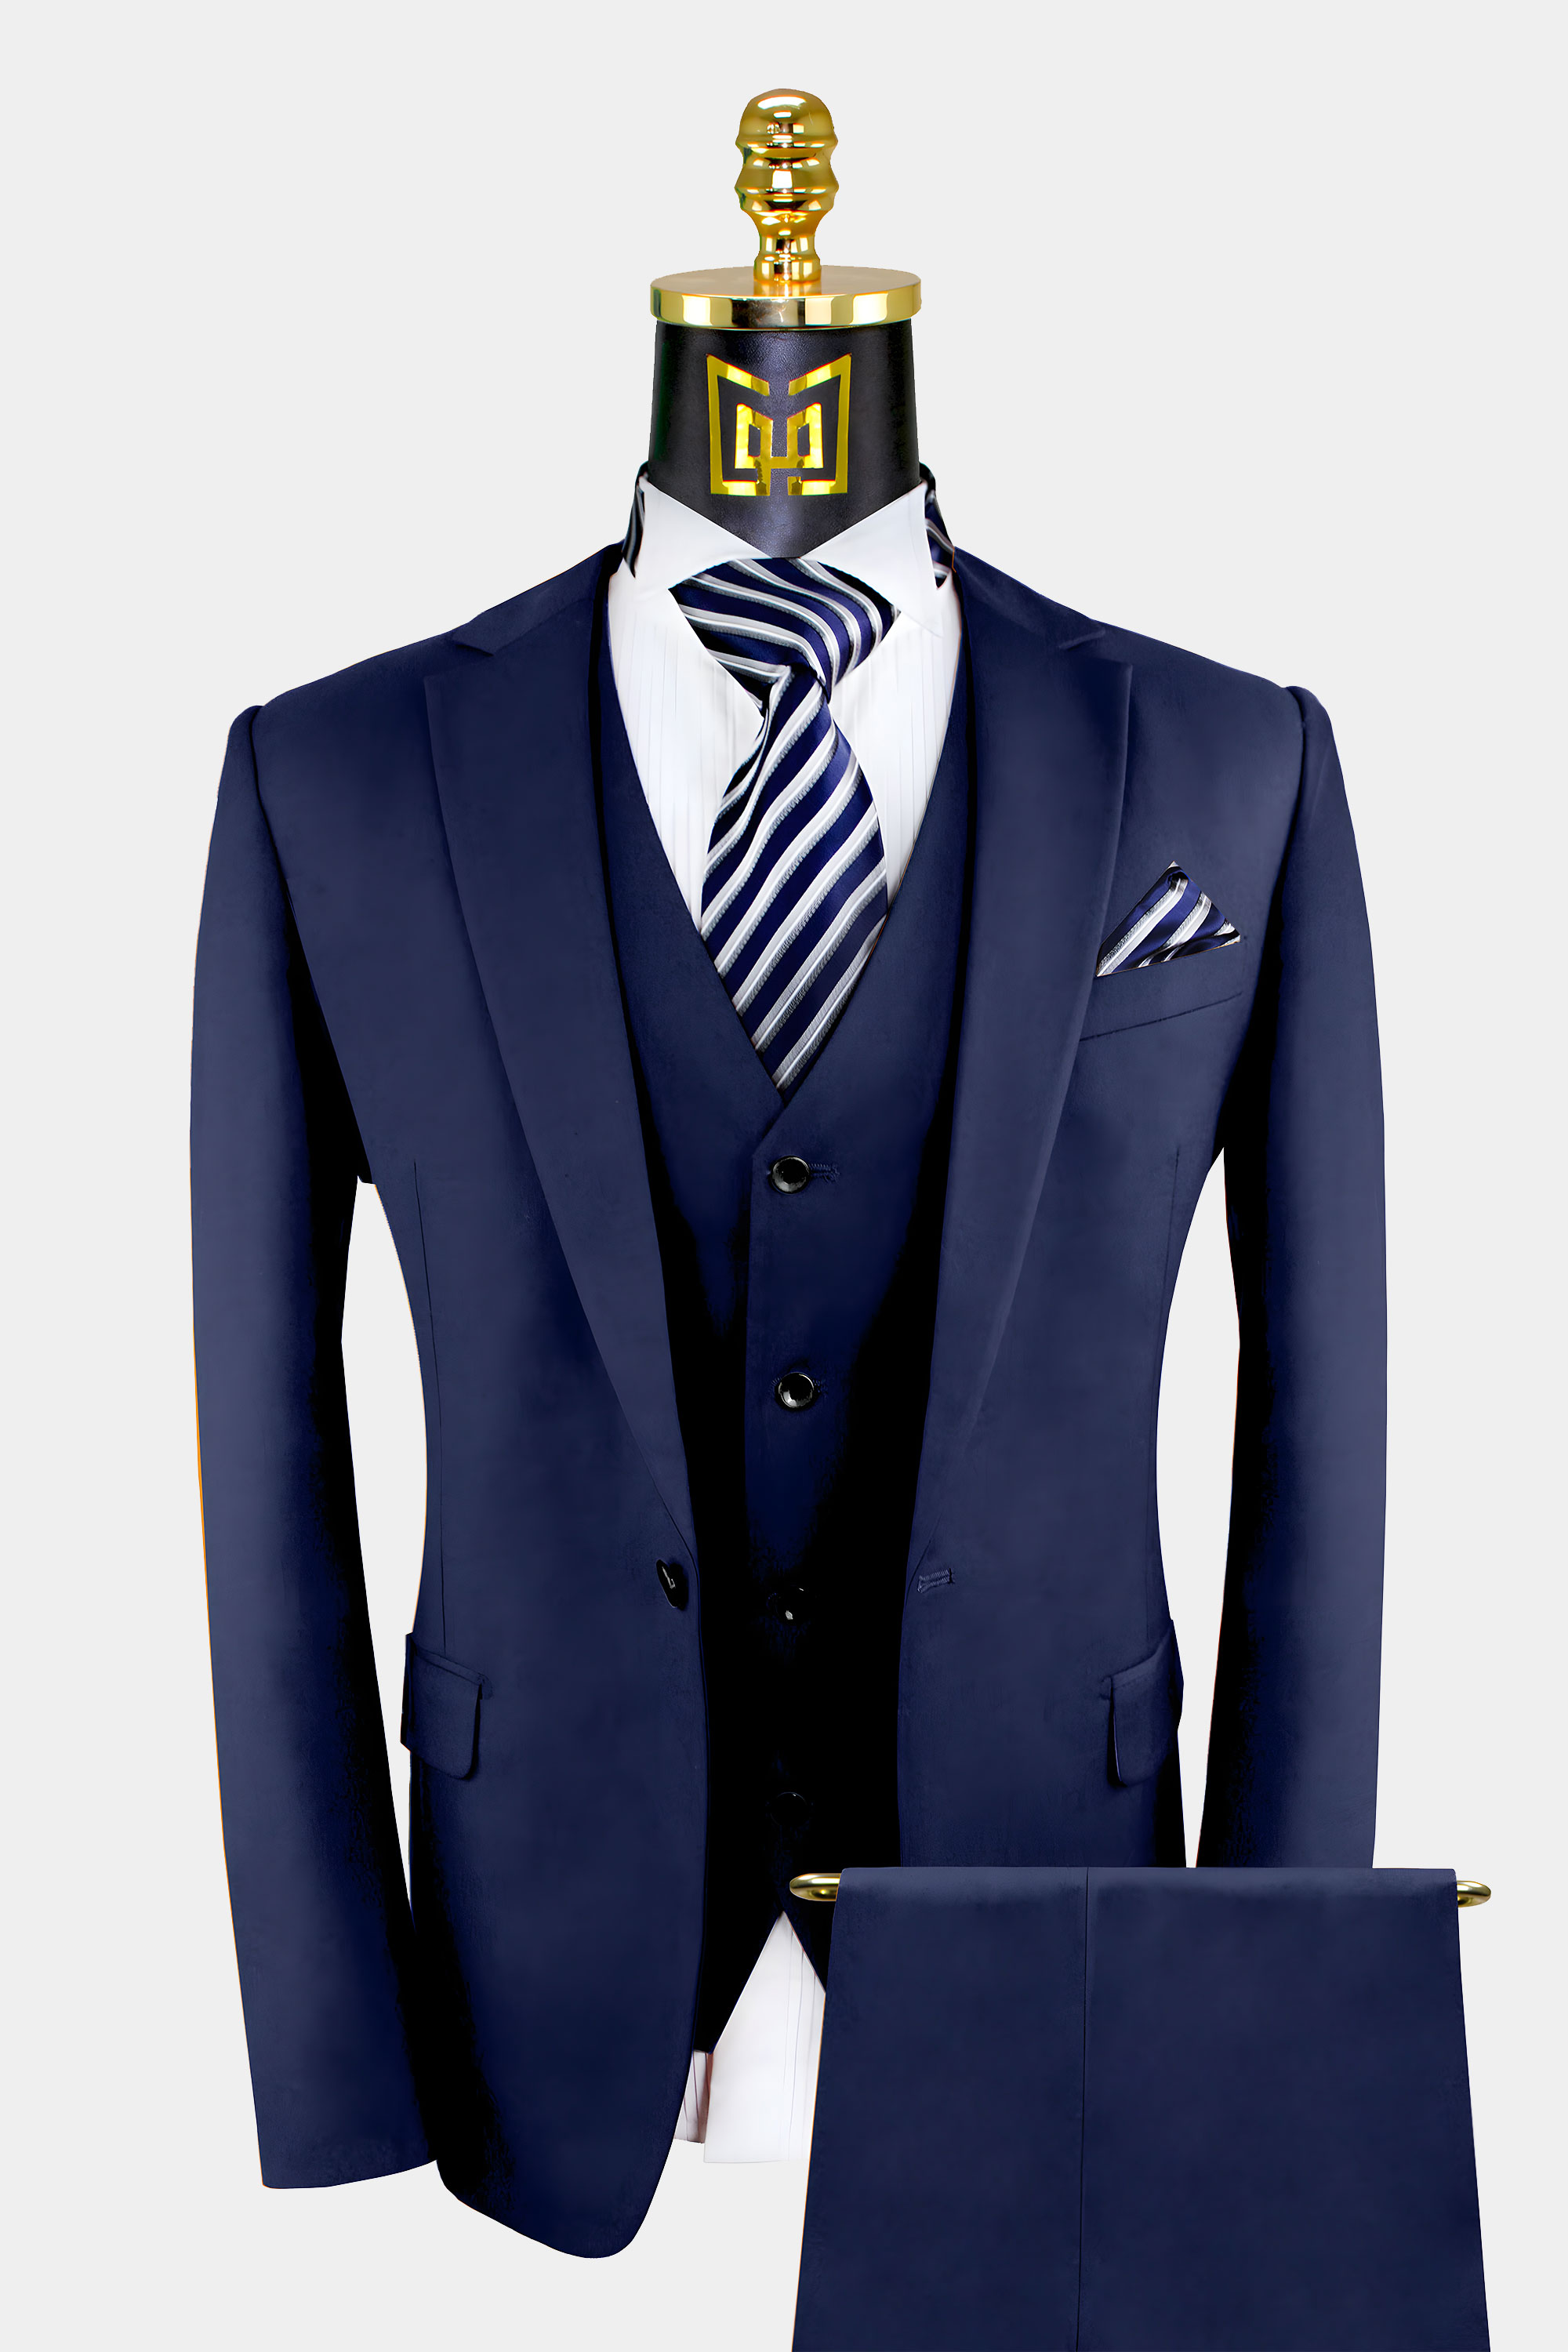 Mens Blue Suit Wedding Suit Groom Wear Suit 3 Piece Suit Two Button ...